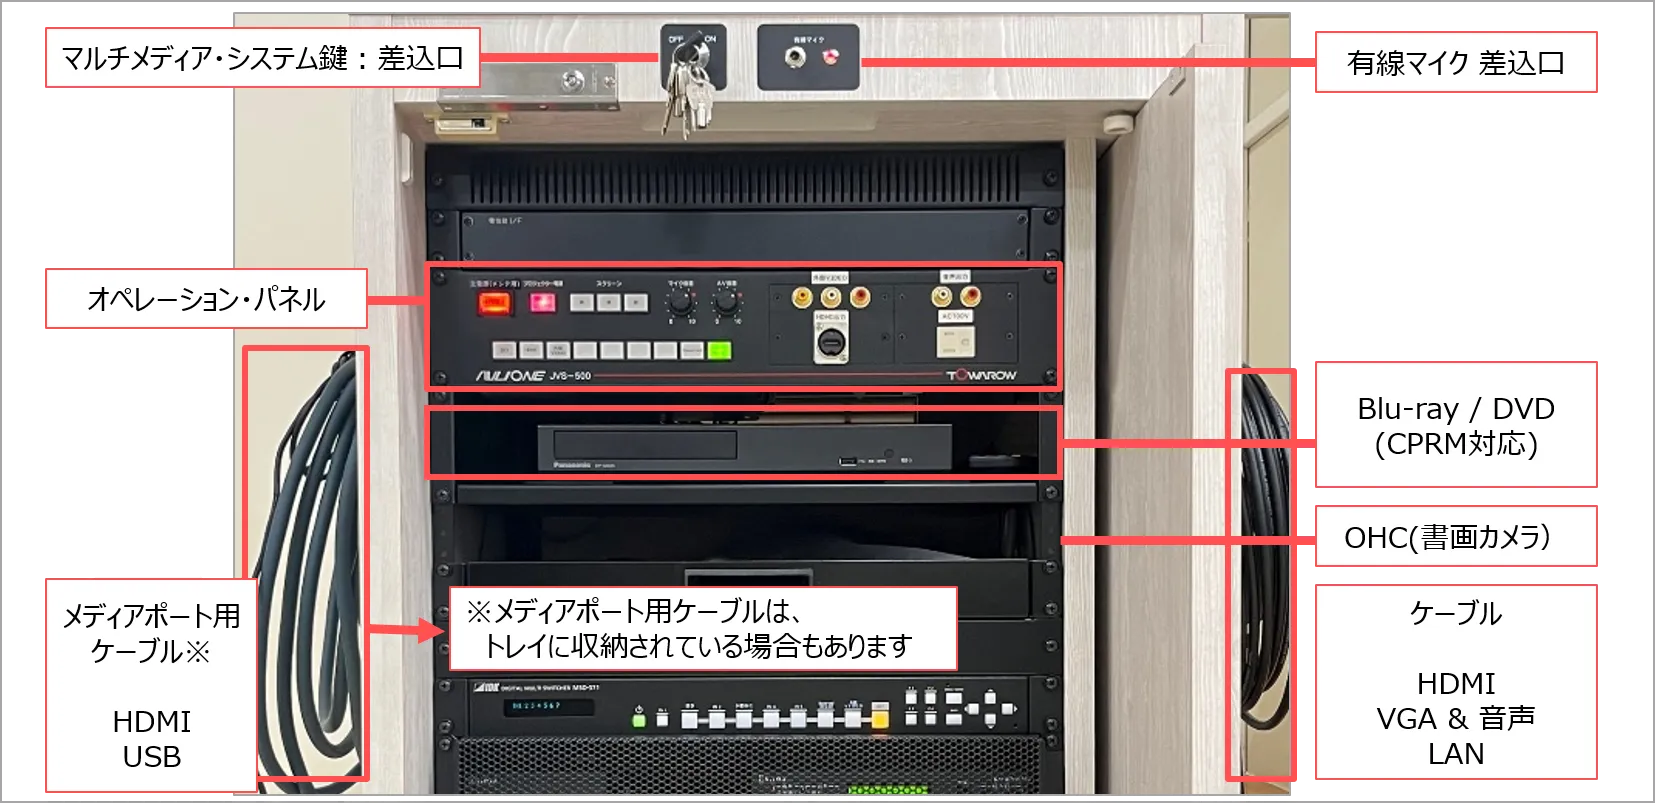 横浜マルチメディアシステム、ミニラック型、鍵付き、MPあり